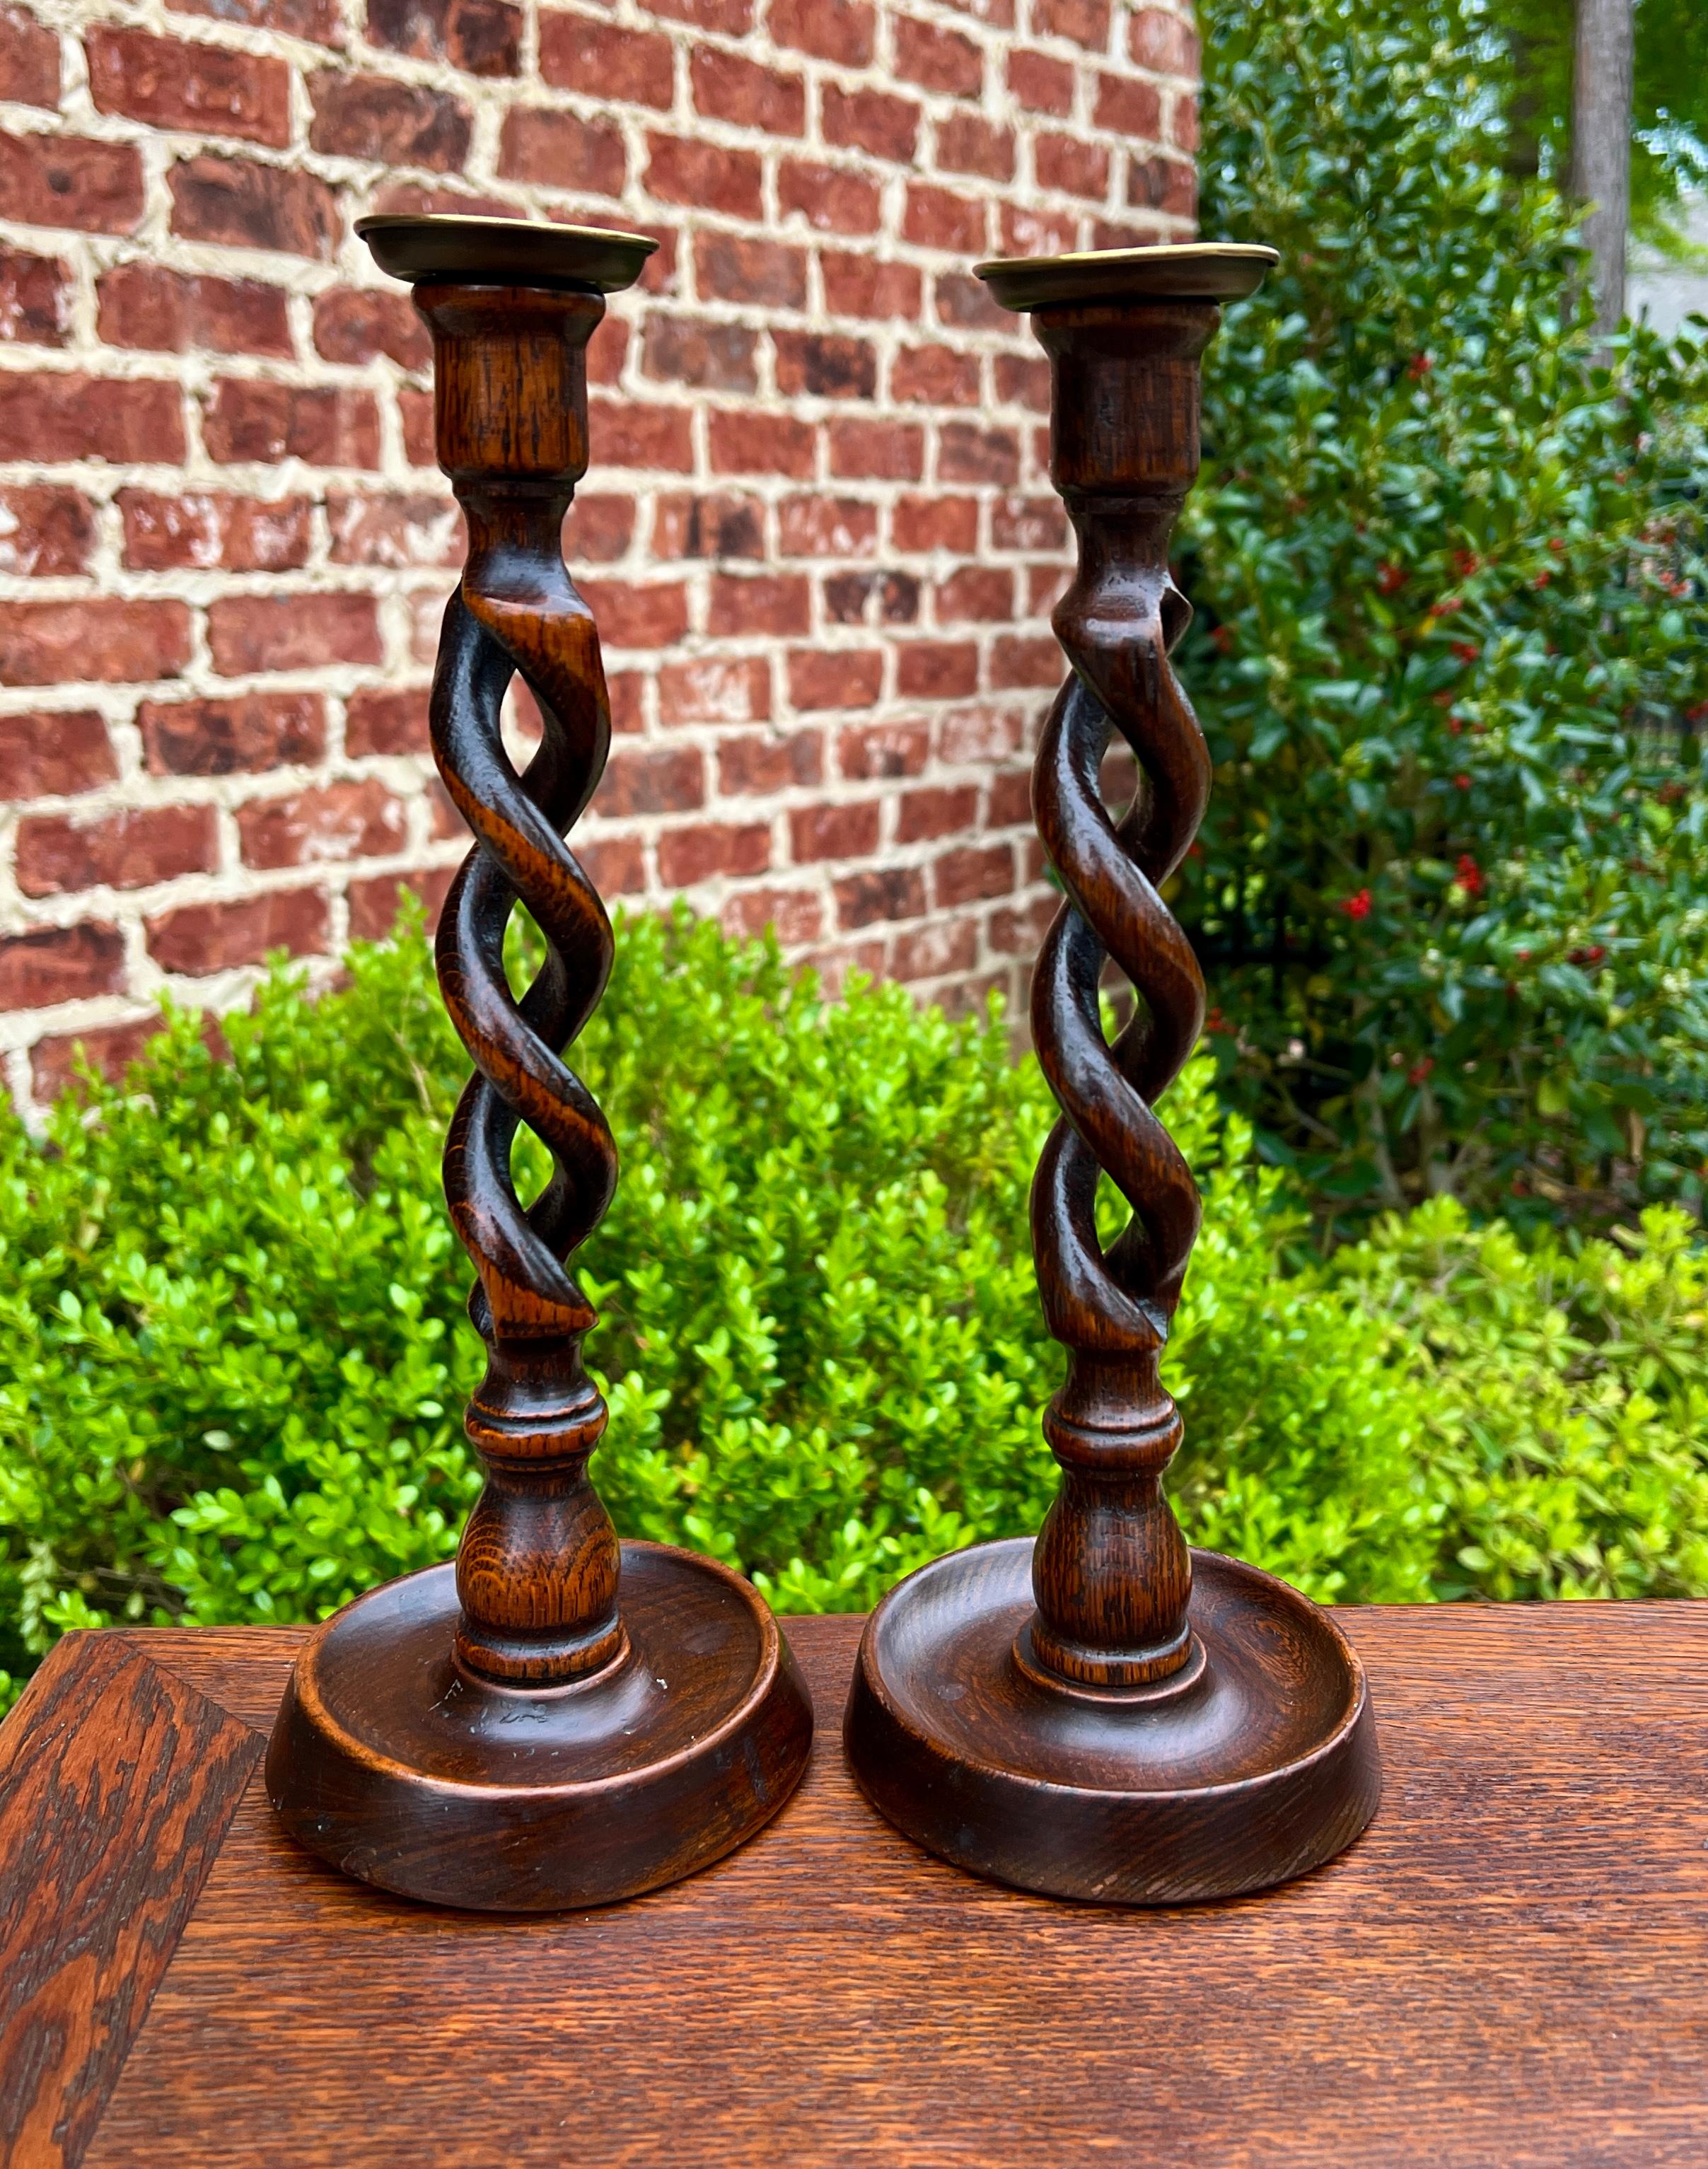 Antique chandeliers anglais ouverts à torsion d'orge Porte-bougies en chêne PAIR 12.5